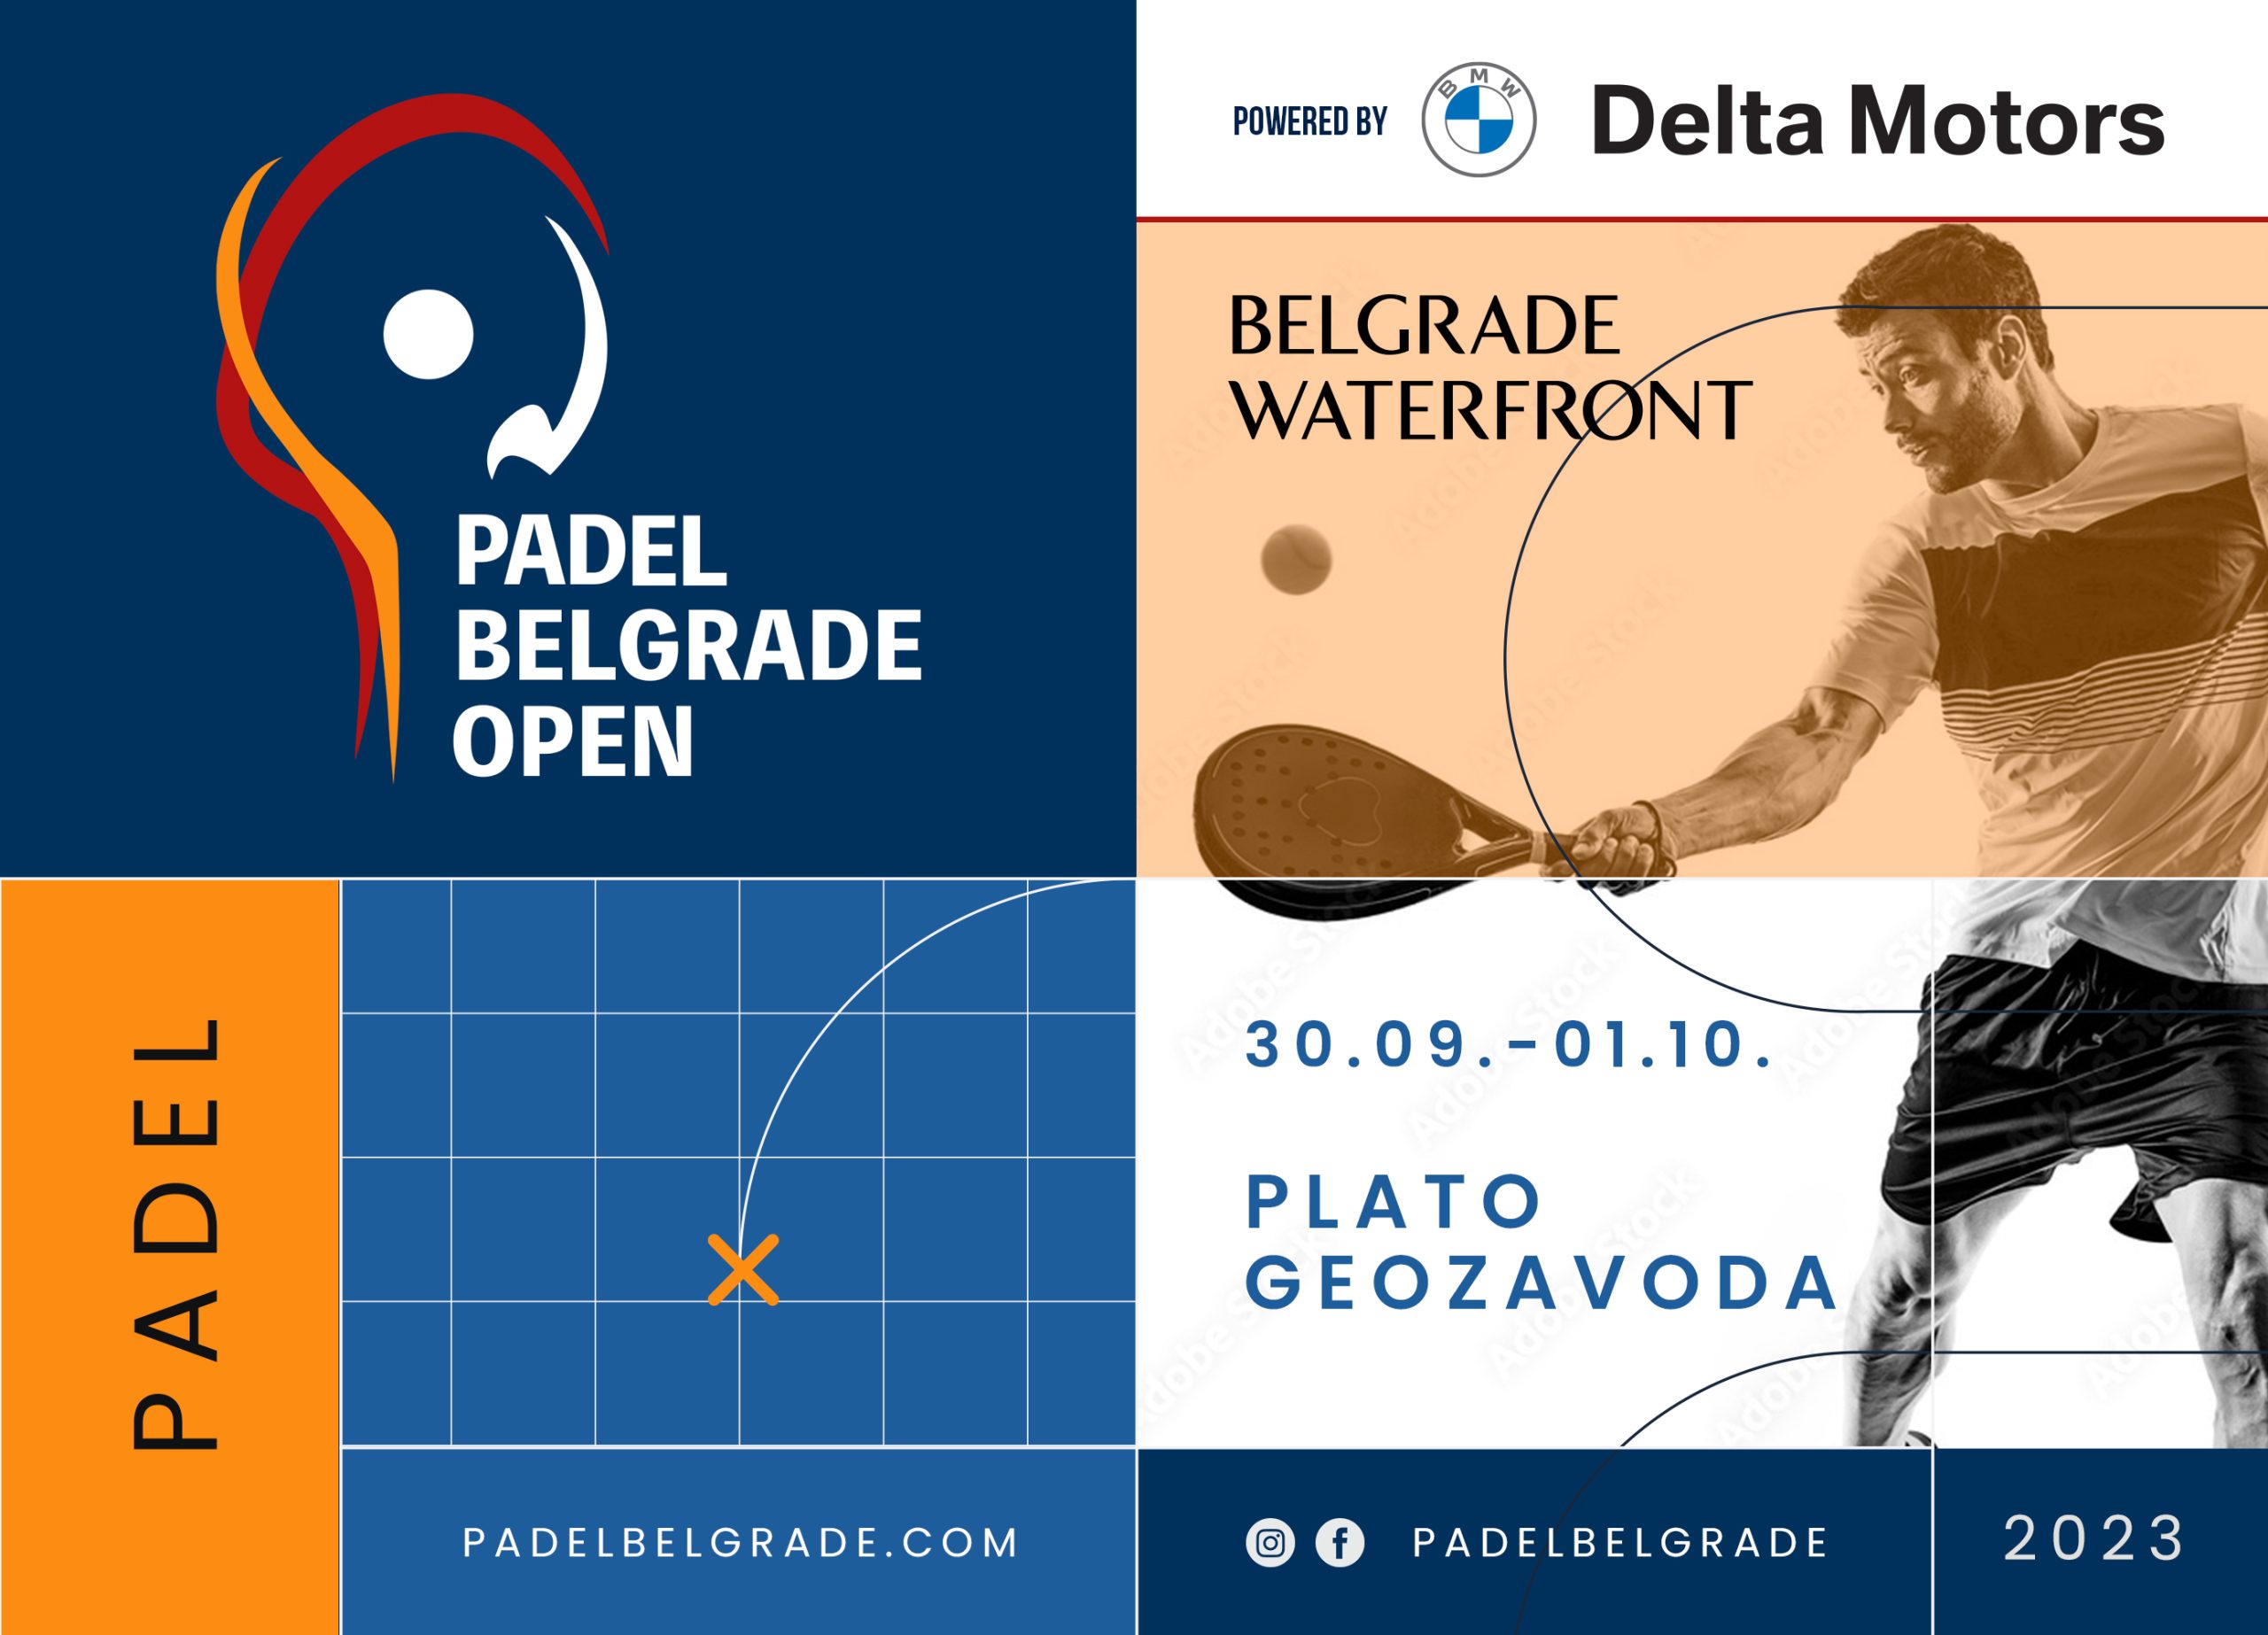 Stiže nam “Padel Belgrade Open BMW Delta Motors” - najveći turnir u Srbiji iz najzanimljivijeg sporta na svetu